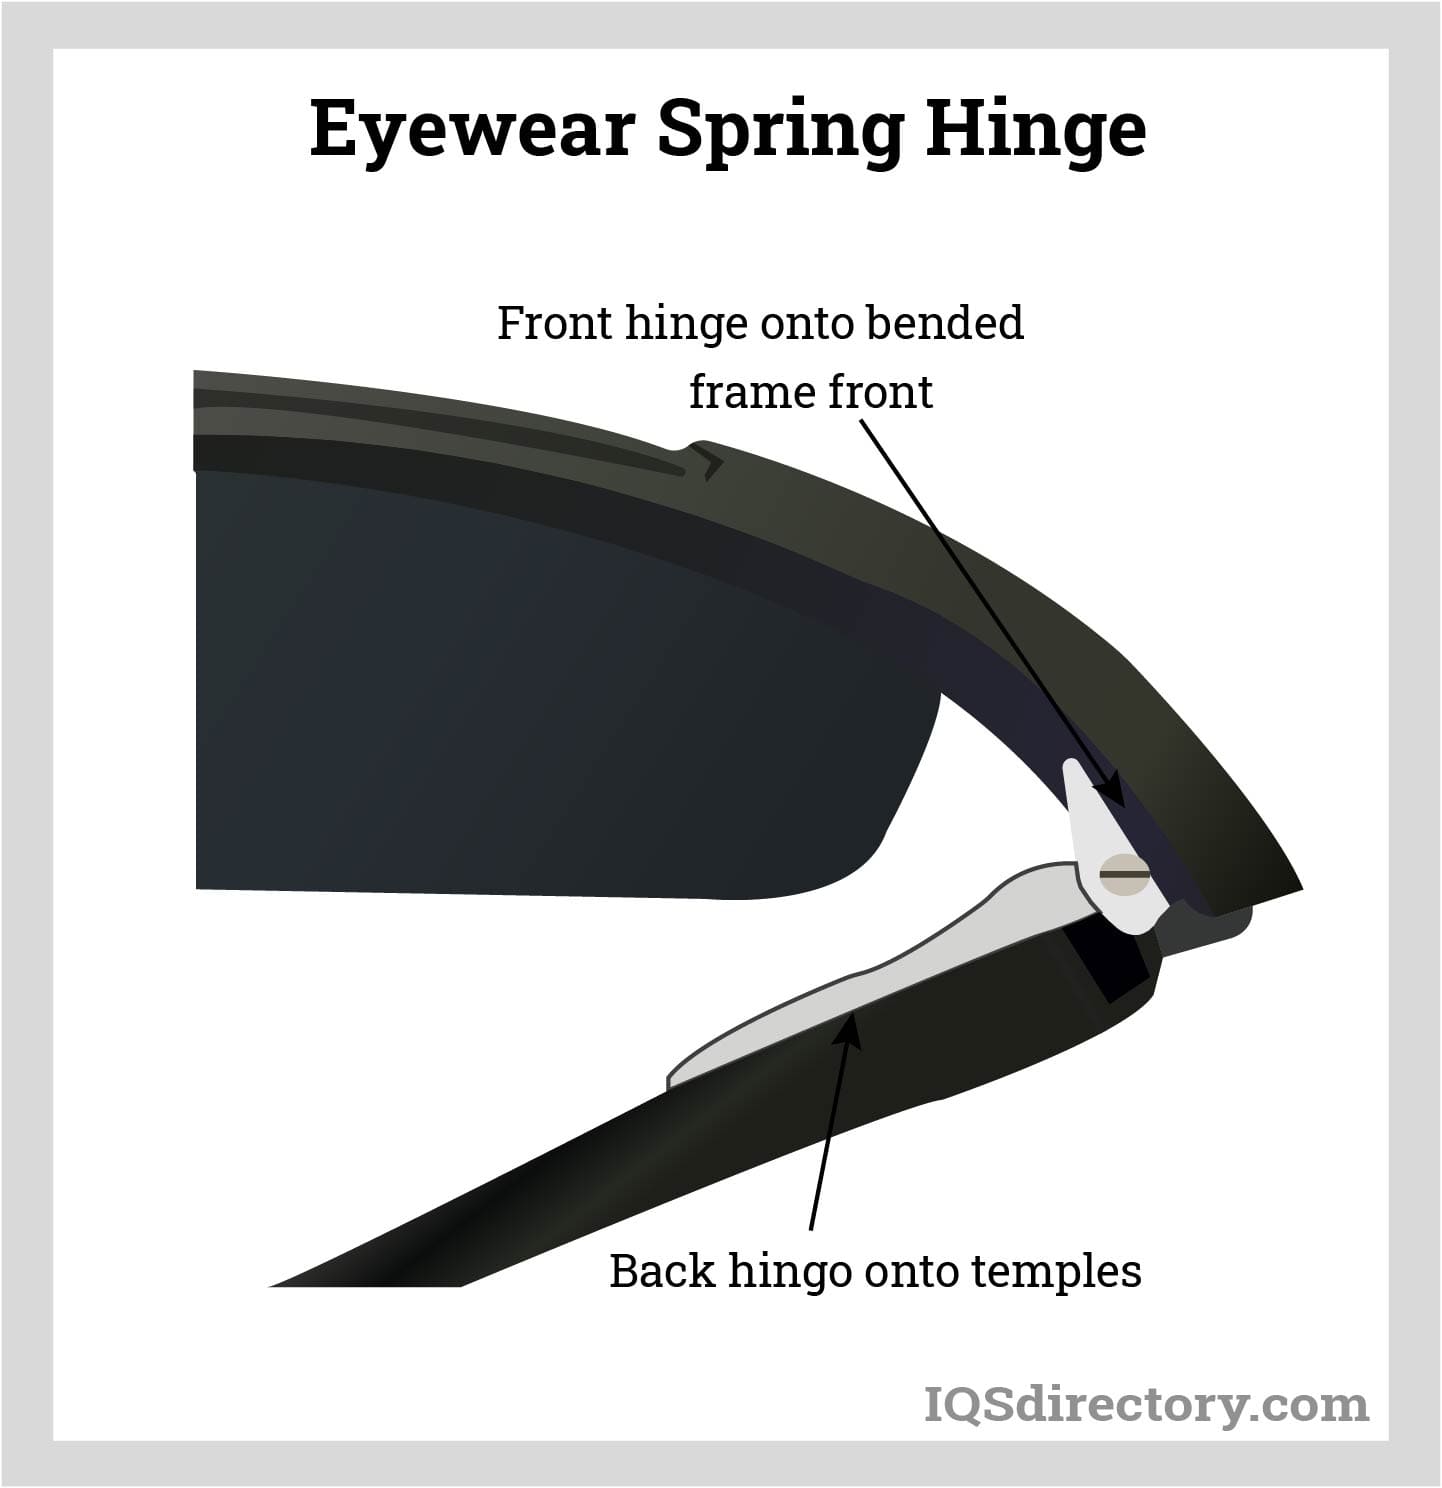 Eyewear Spring Hinge